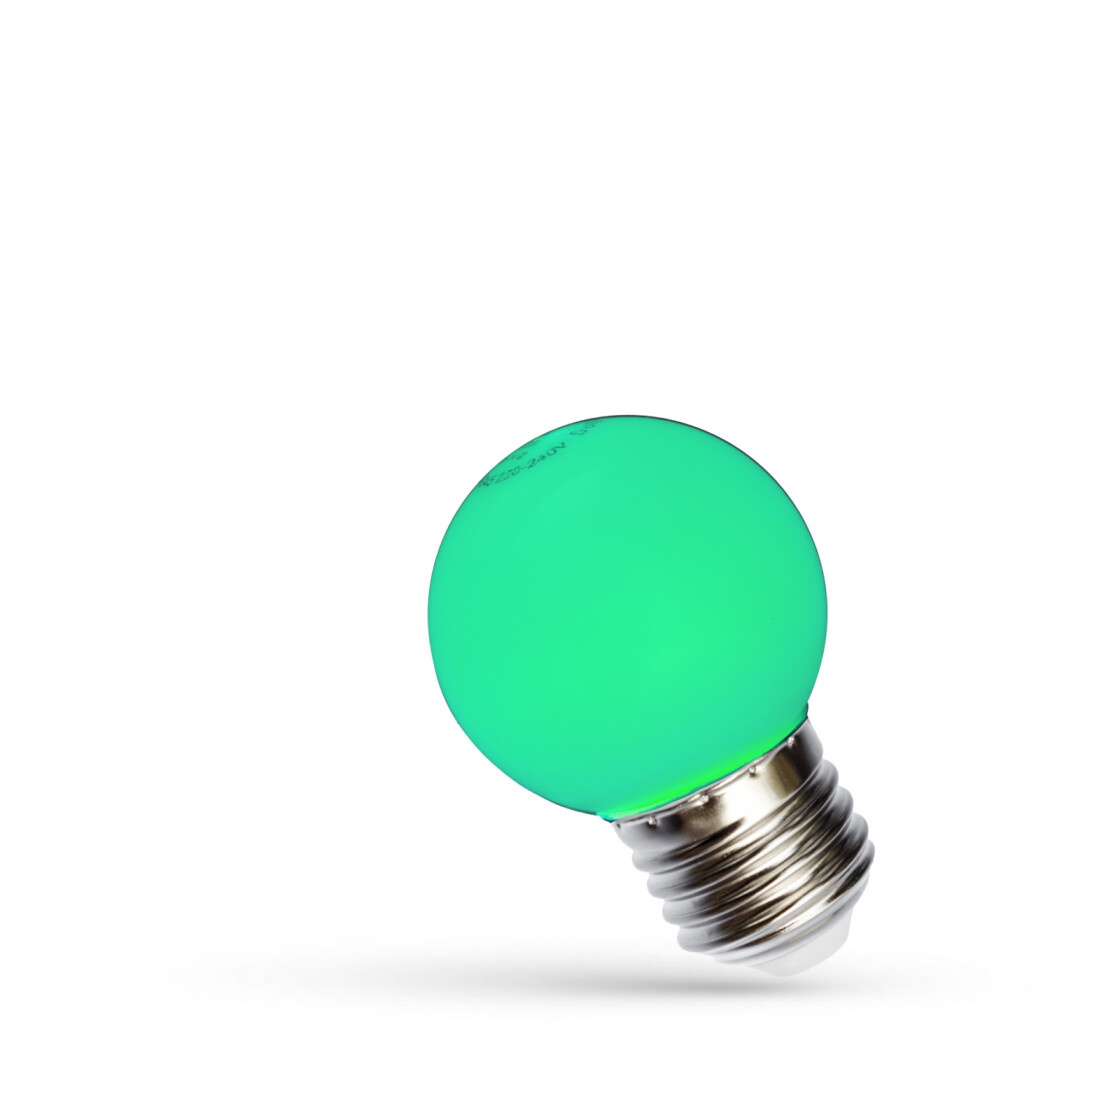 Senator scherp statisch LED Lamp E27 fitting - G45 - Groen licht - 1W vervangt 10W -  Ledpanelendiscounter.nl